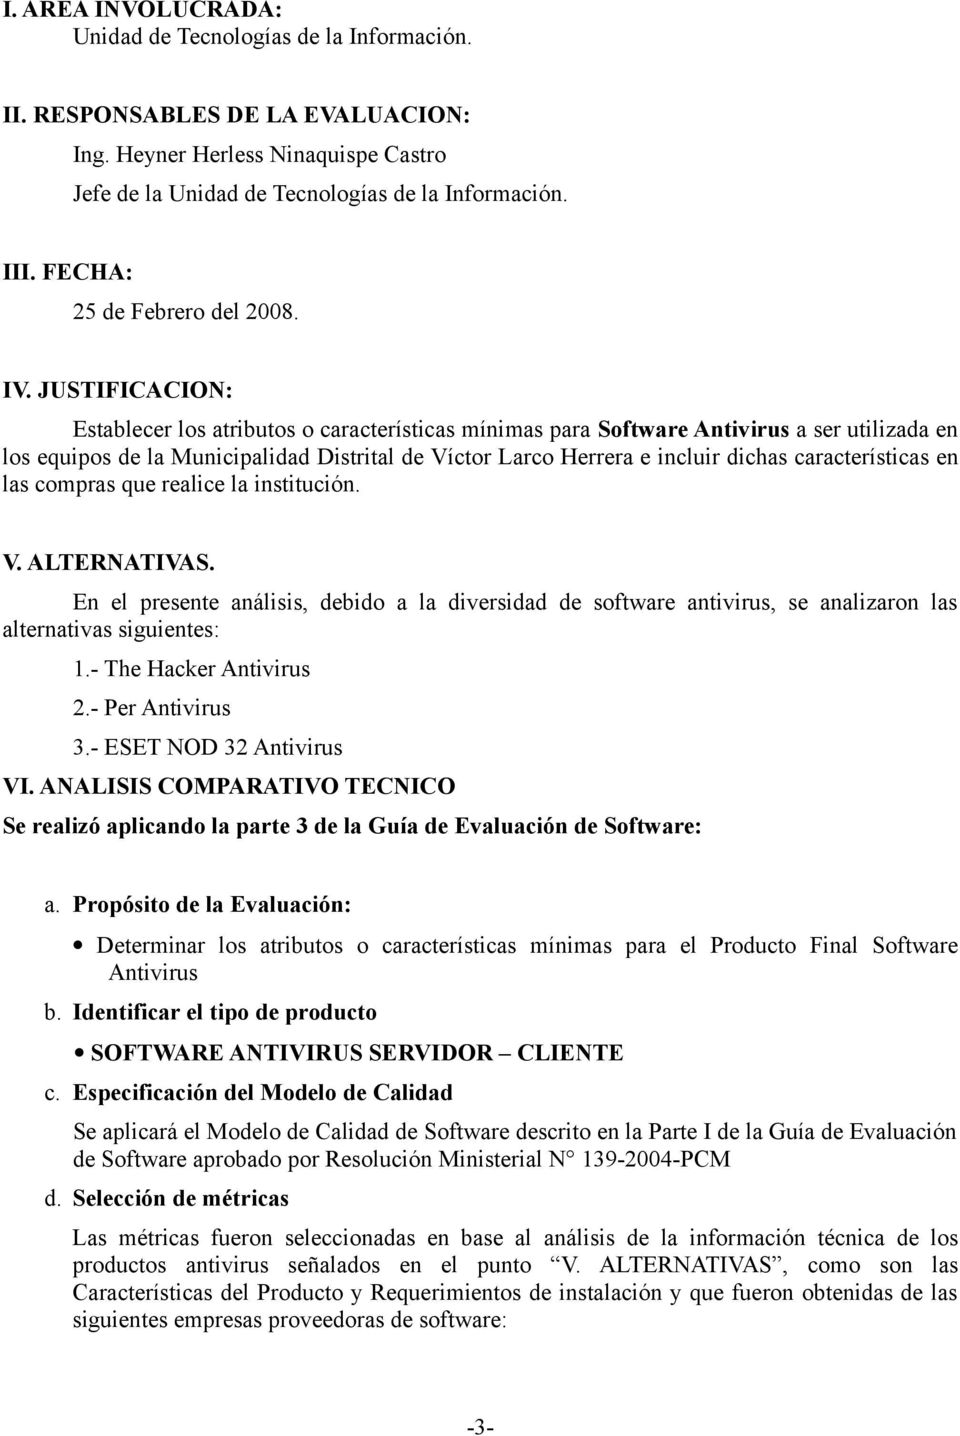 JUSTIFICACION: Establecer los atributos o características mínimas para Software Antivirus a ser utilizada en los equipos de la Municipalidad Distrital de Víctor Larco Herrera e incluir dichas